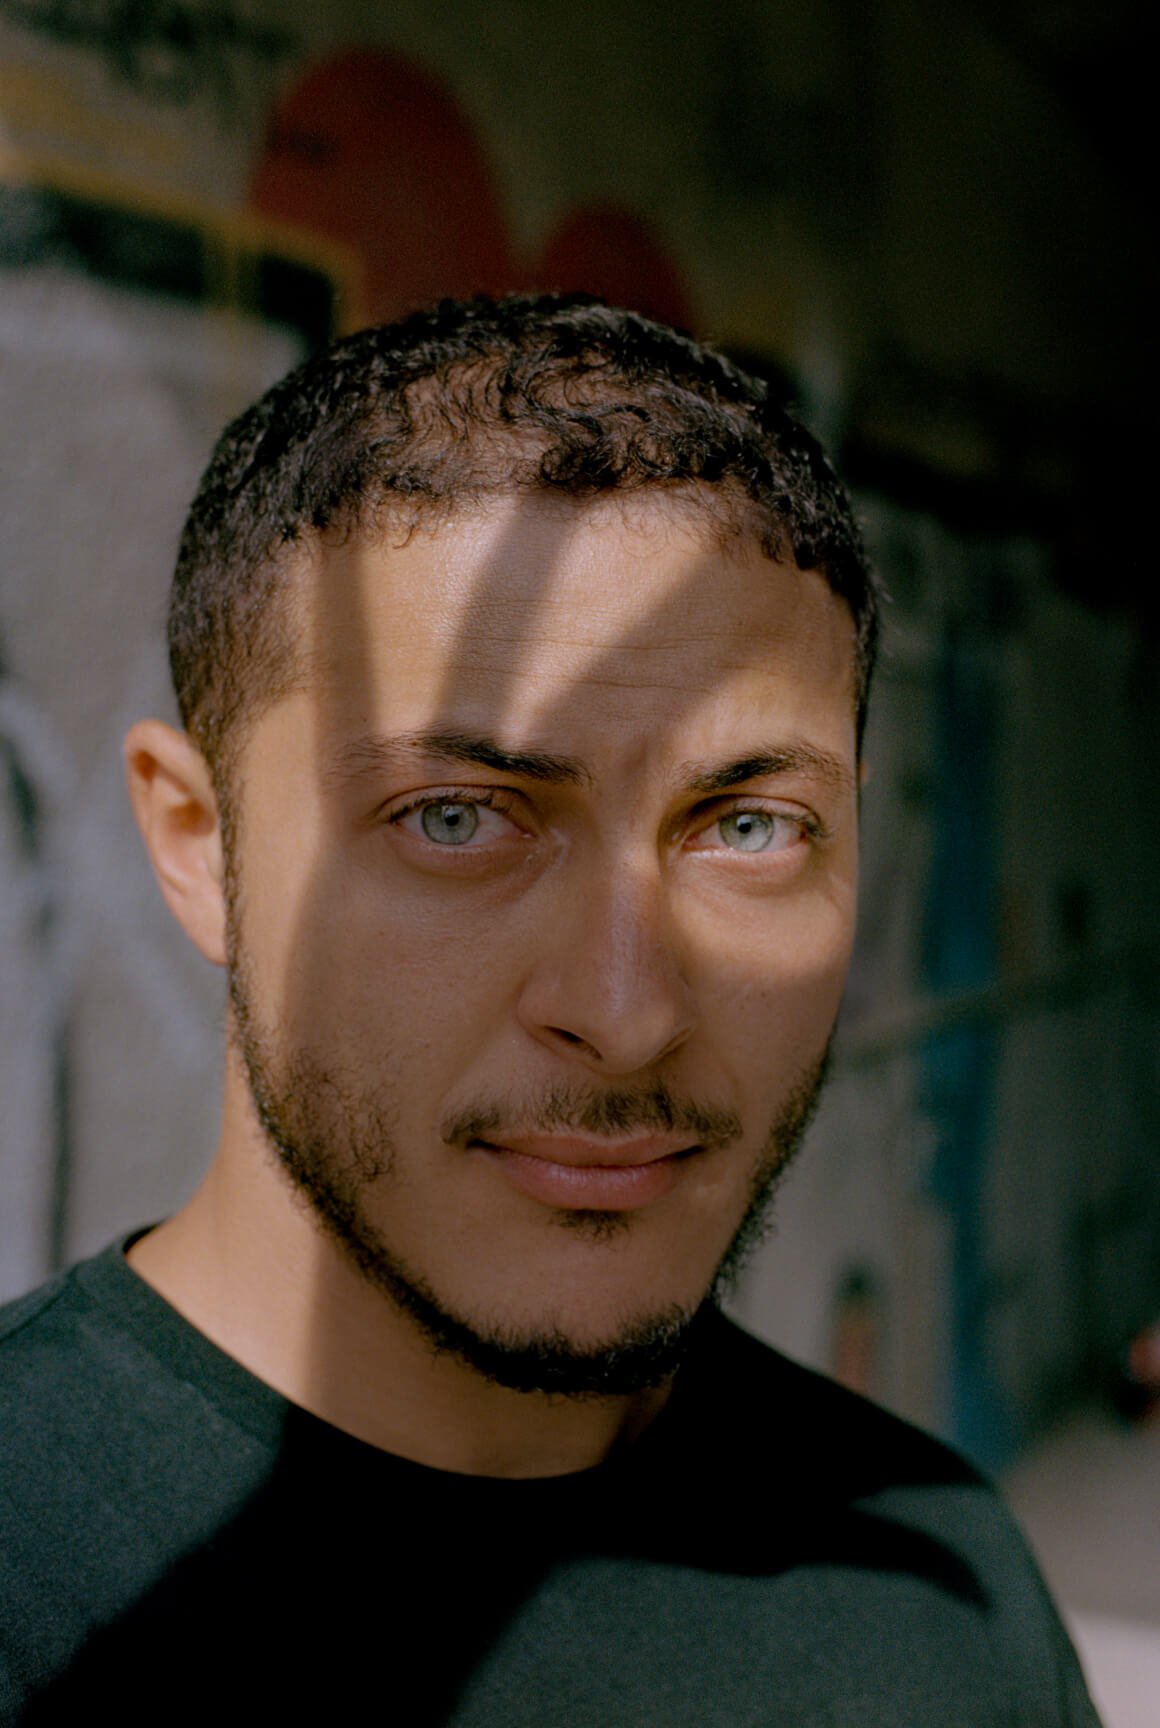 Ritratto di uomo tunisino con occhi azzurri e un'ombra a forma di mano proiettata sul viso.